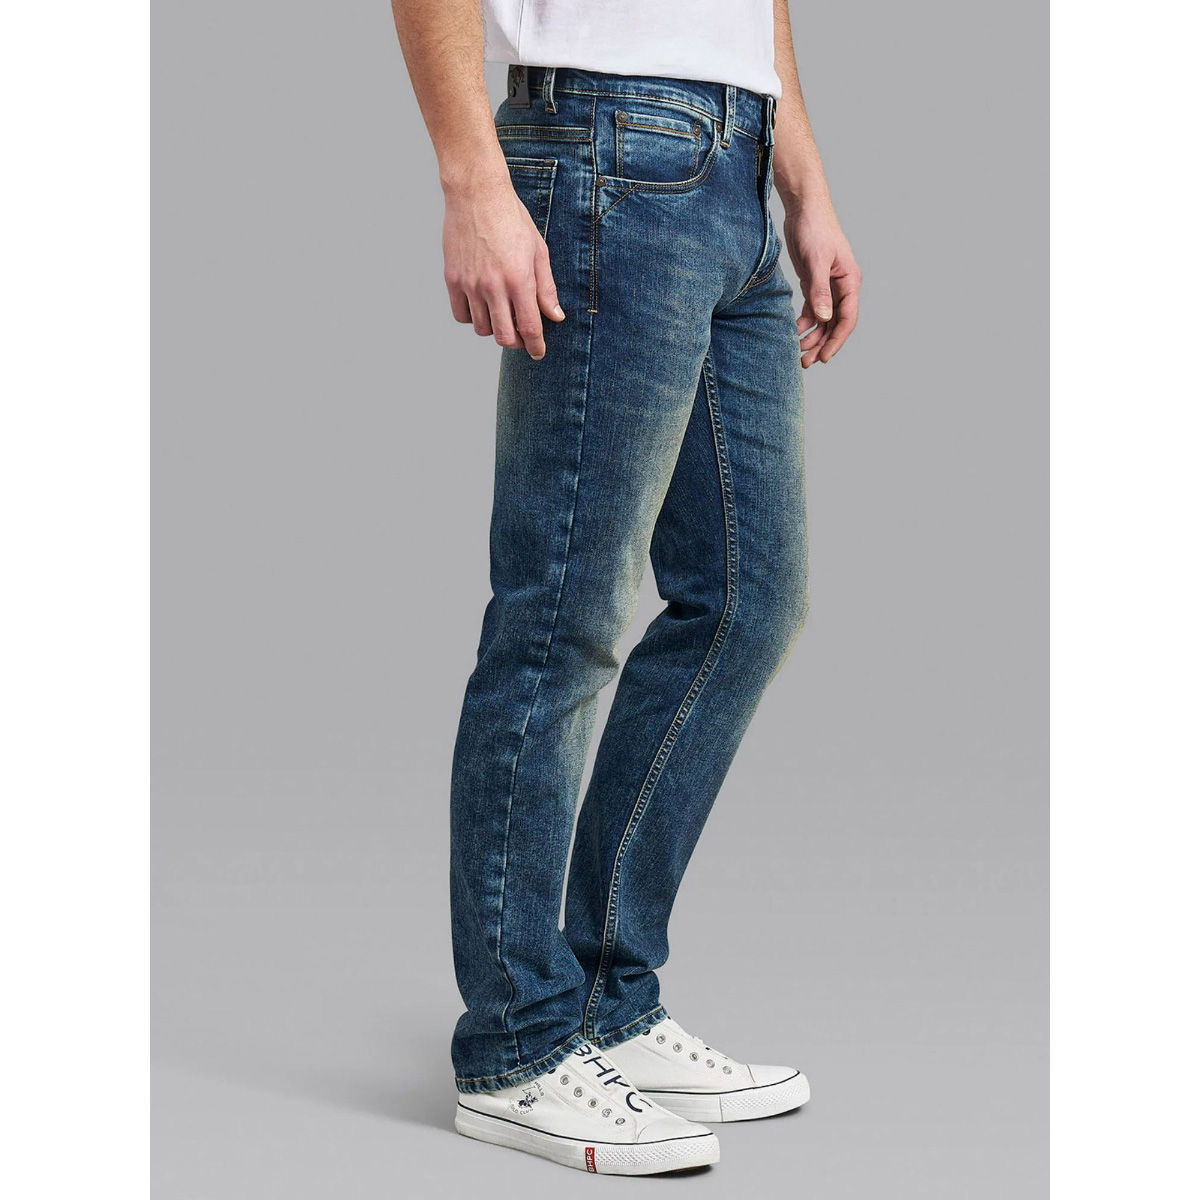 ikson denim club Boot-Leg Men Dark Blue Jeans - Buy ikson denim club  Boot-Leg Men Dark Blue Jeans Online at Best Prices in India | Flipkart.com